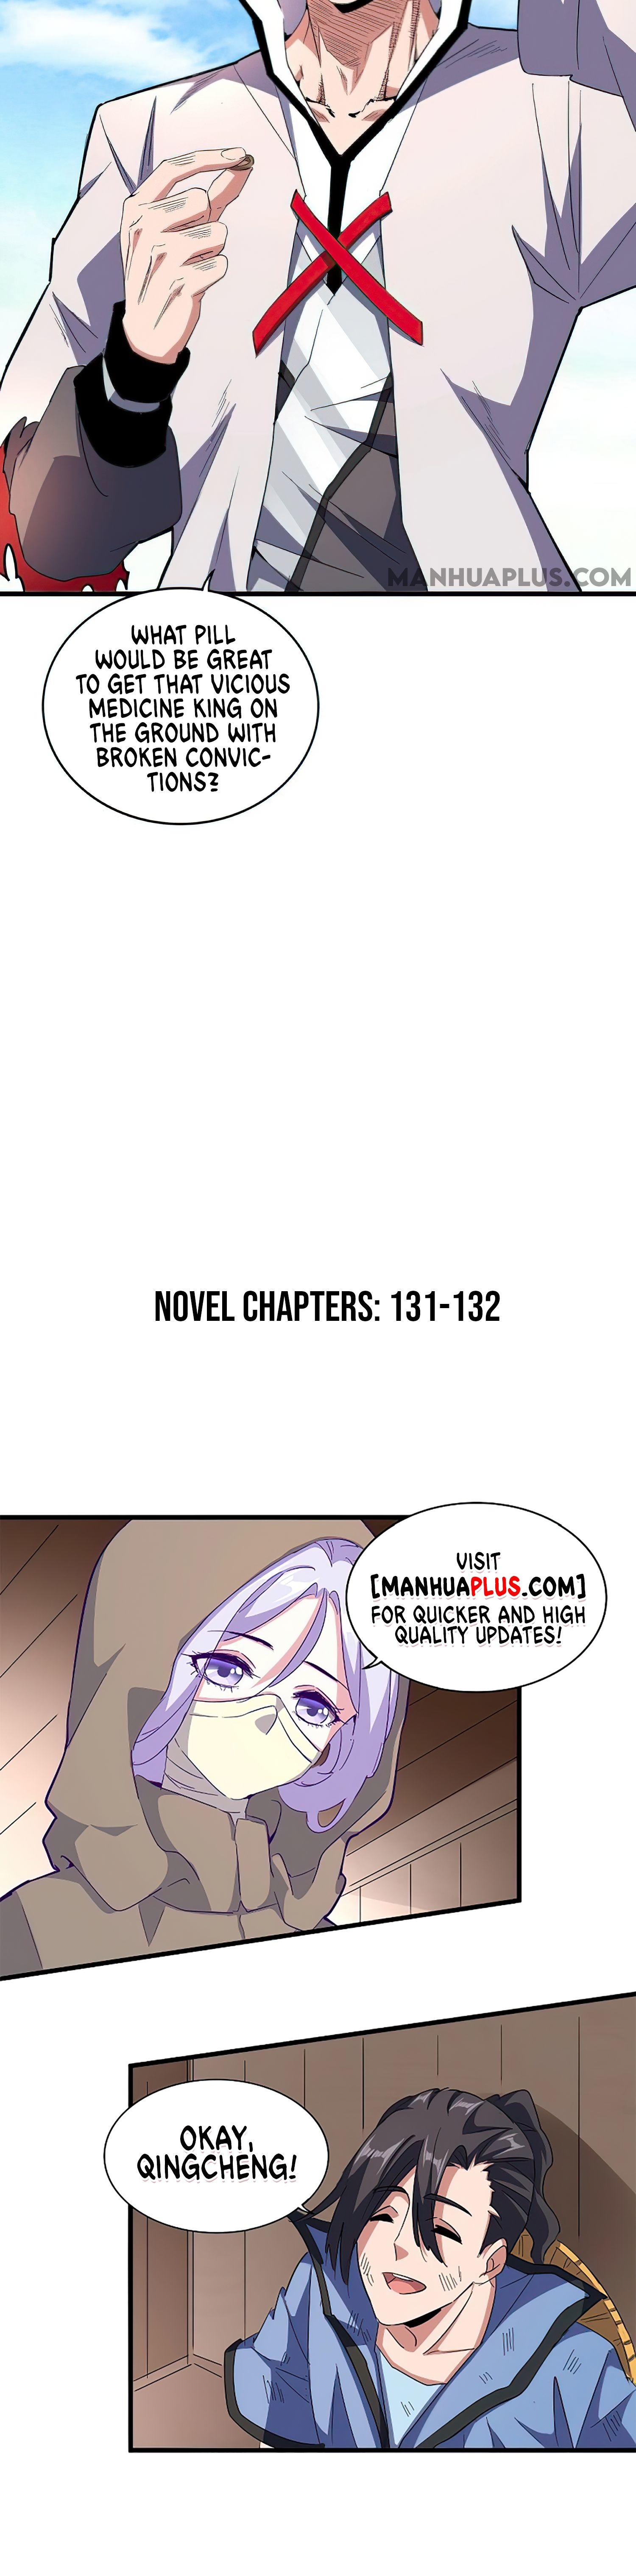 Magic Emperor Chapter 165 page 21 - Mangakakalot